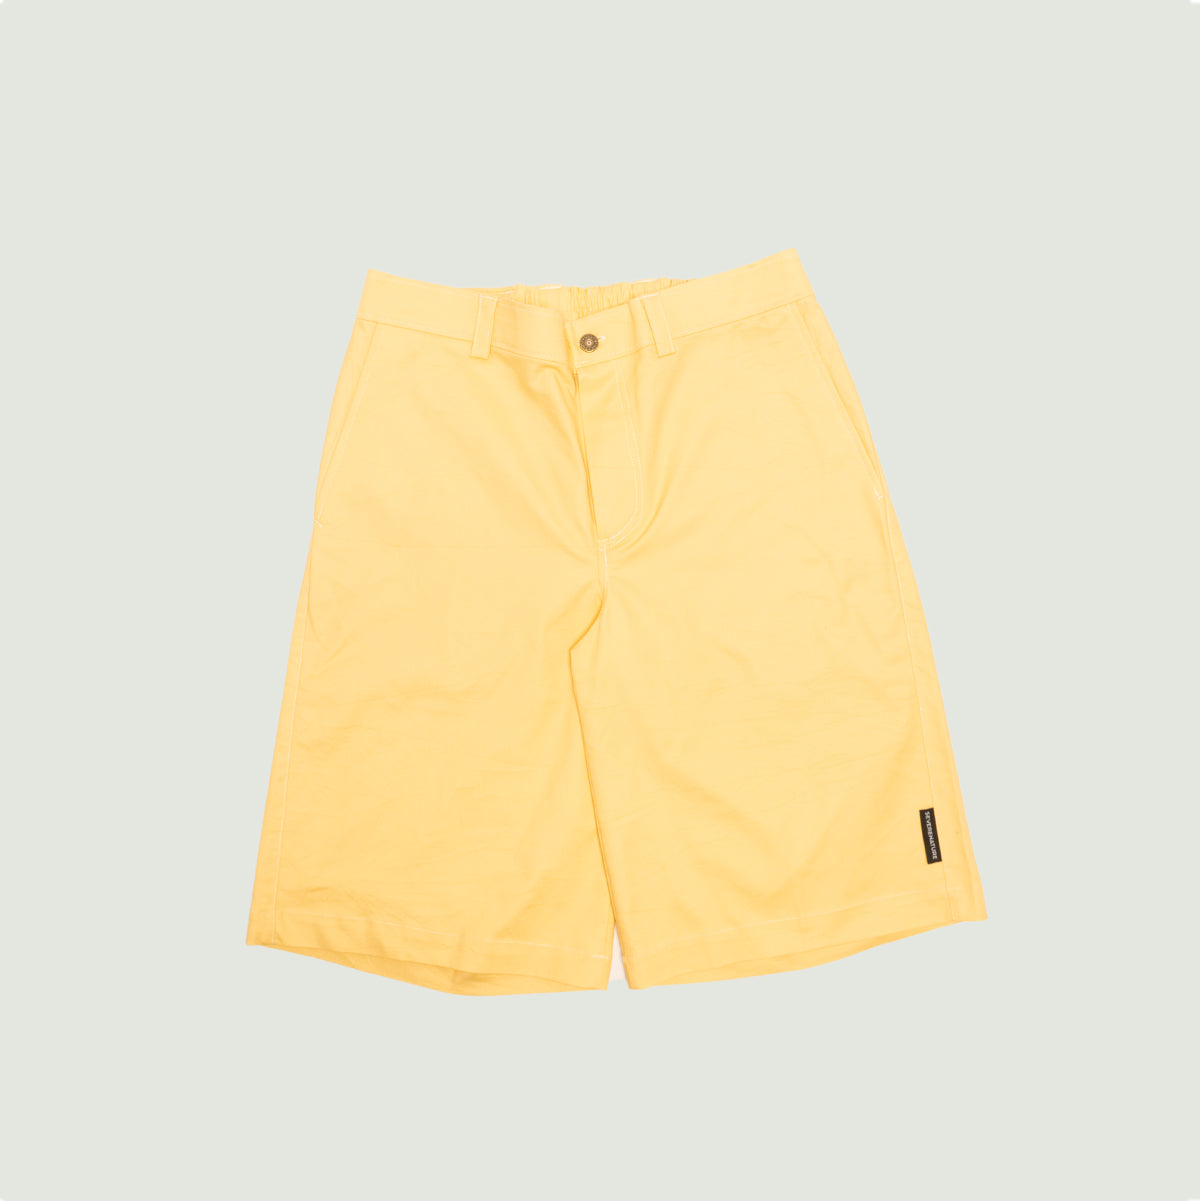 Bushman work butter-yellow shorts